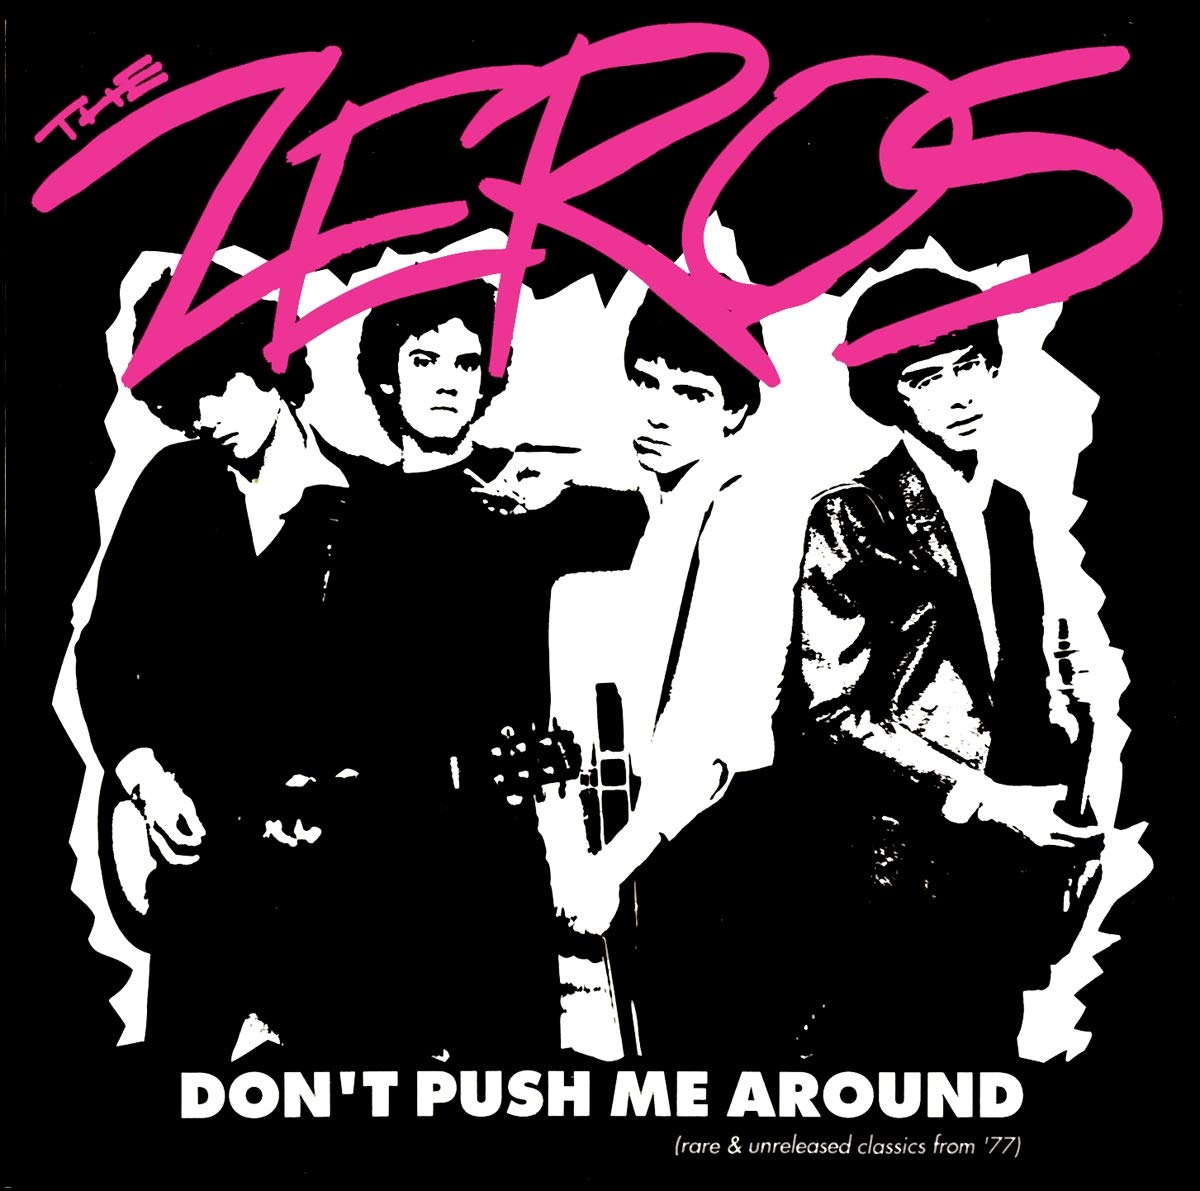 THE ZEROS - DON’T PUSH ME AROUND Vinyl LP